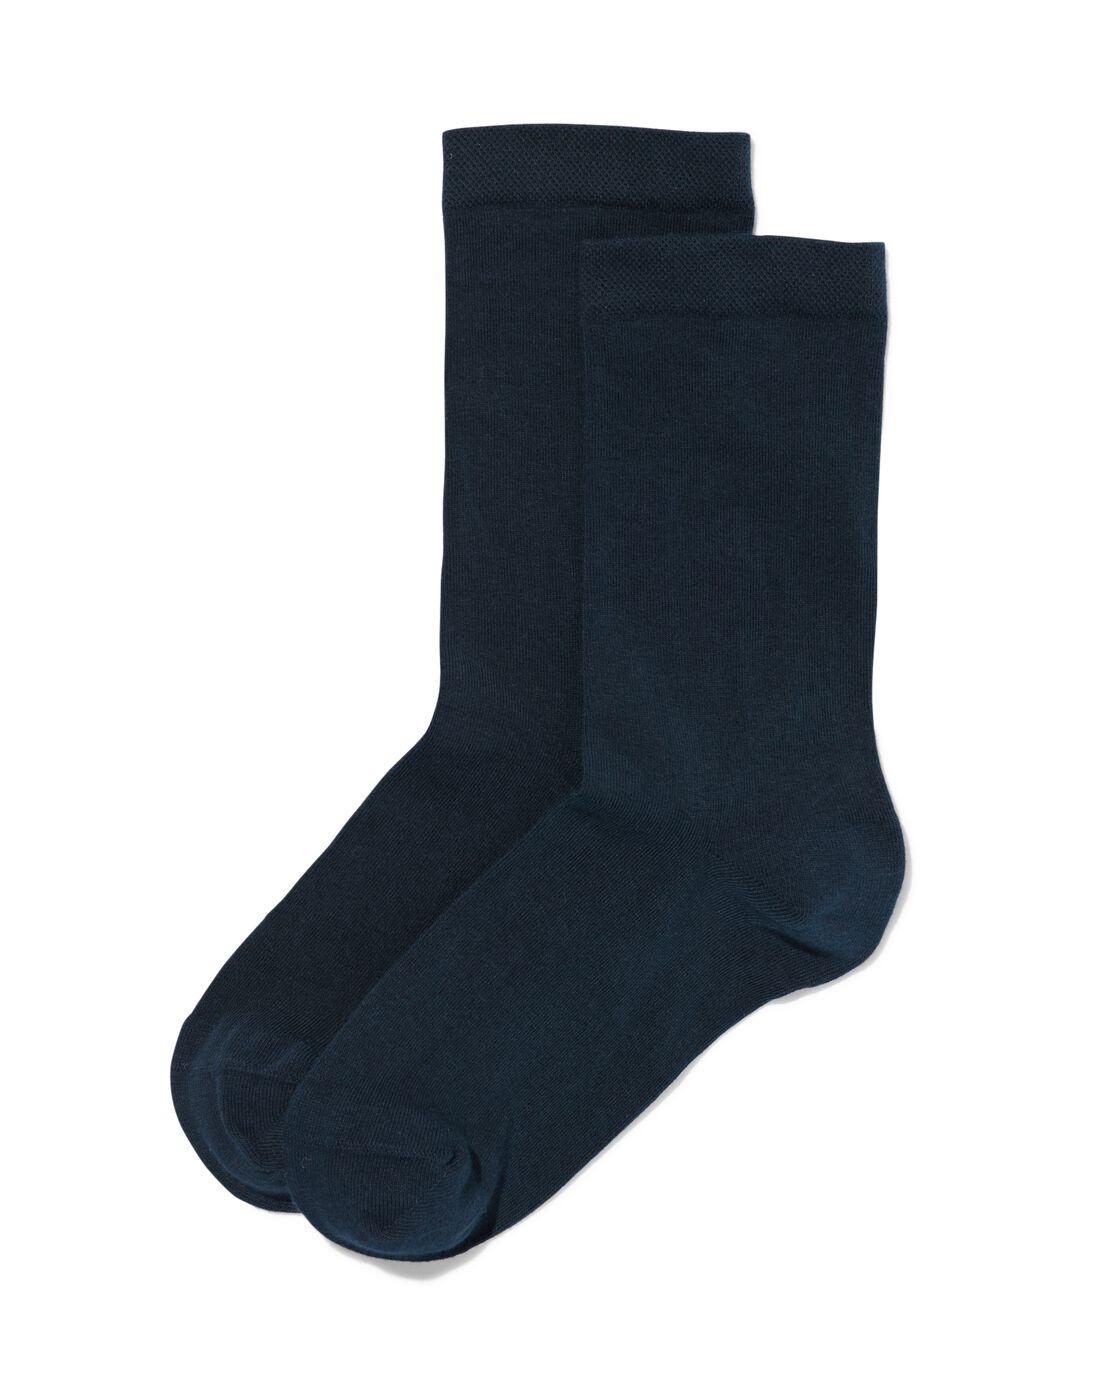 Image of HEMA Dames Sokken Met Biologisch Katoen - 2 Paar Donkerblauw (donkerblauw)